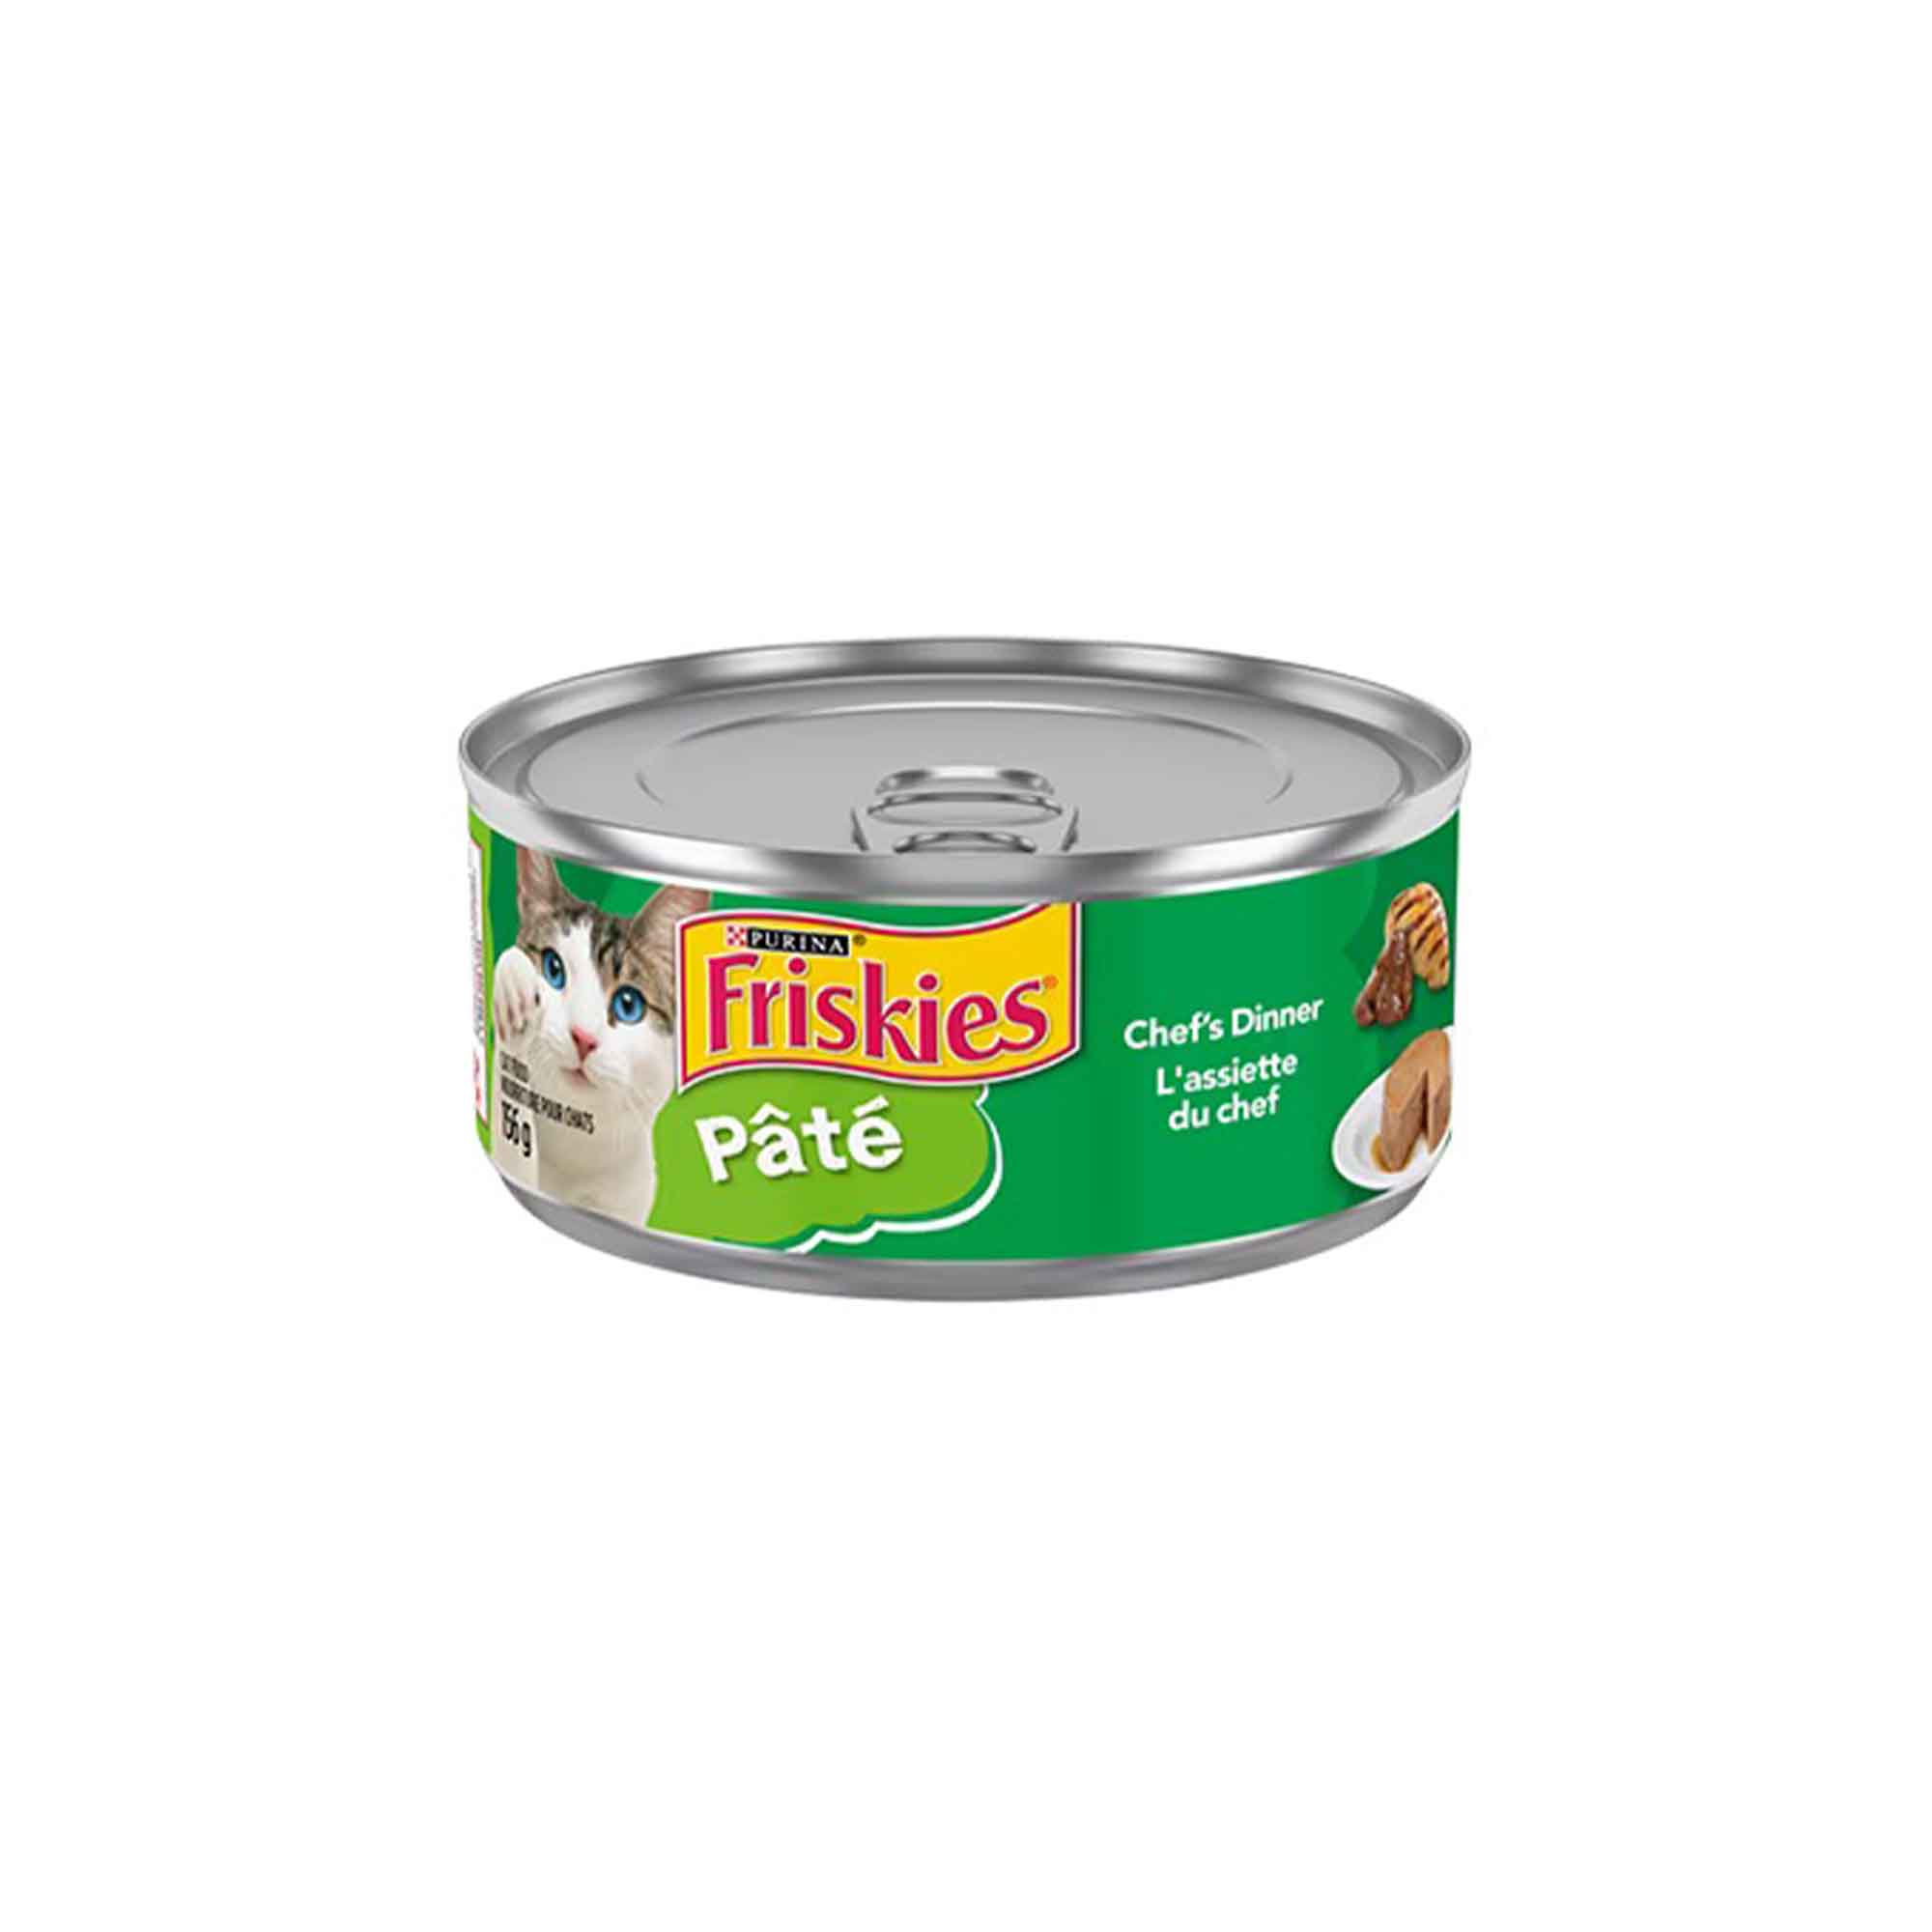 Friskies® Pâté, l'assiette du chef, nourriture humide pour chat - 156g